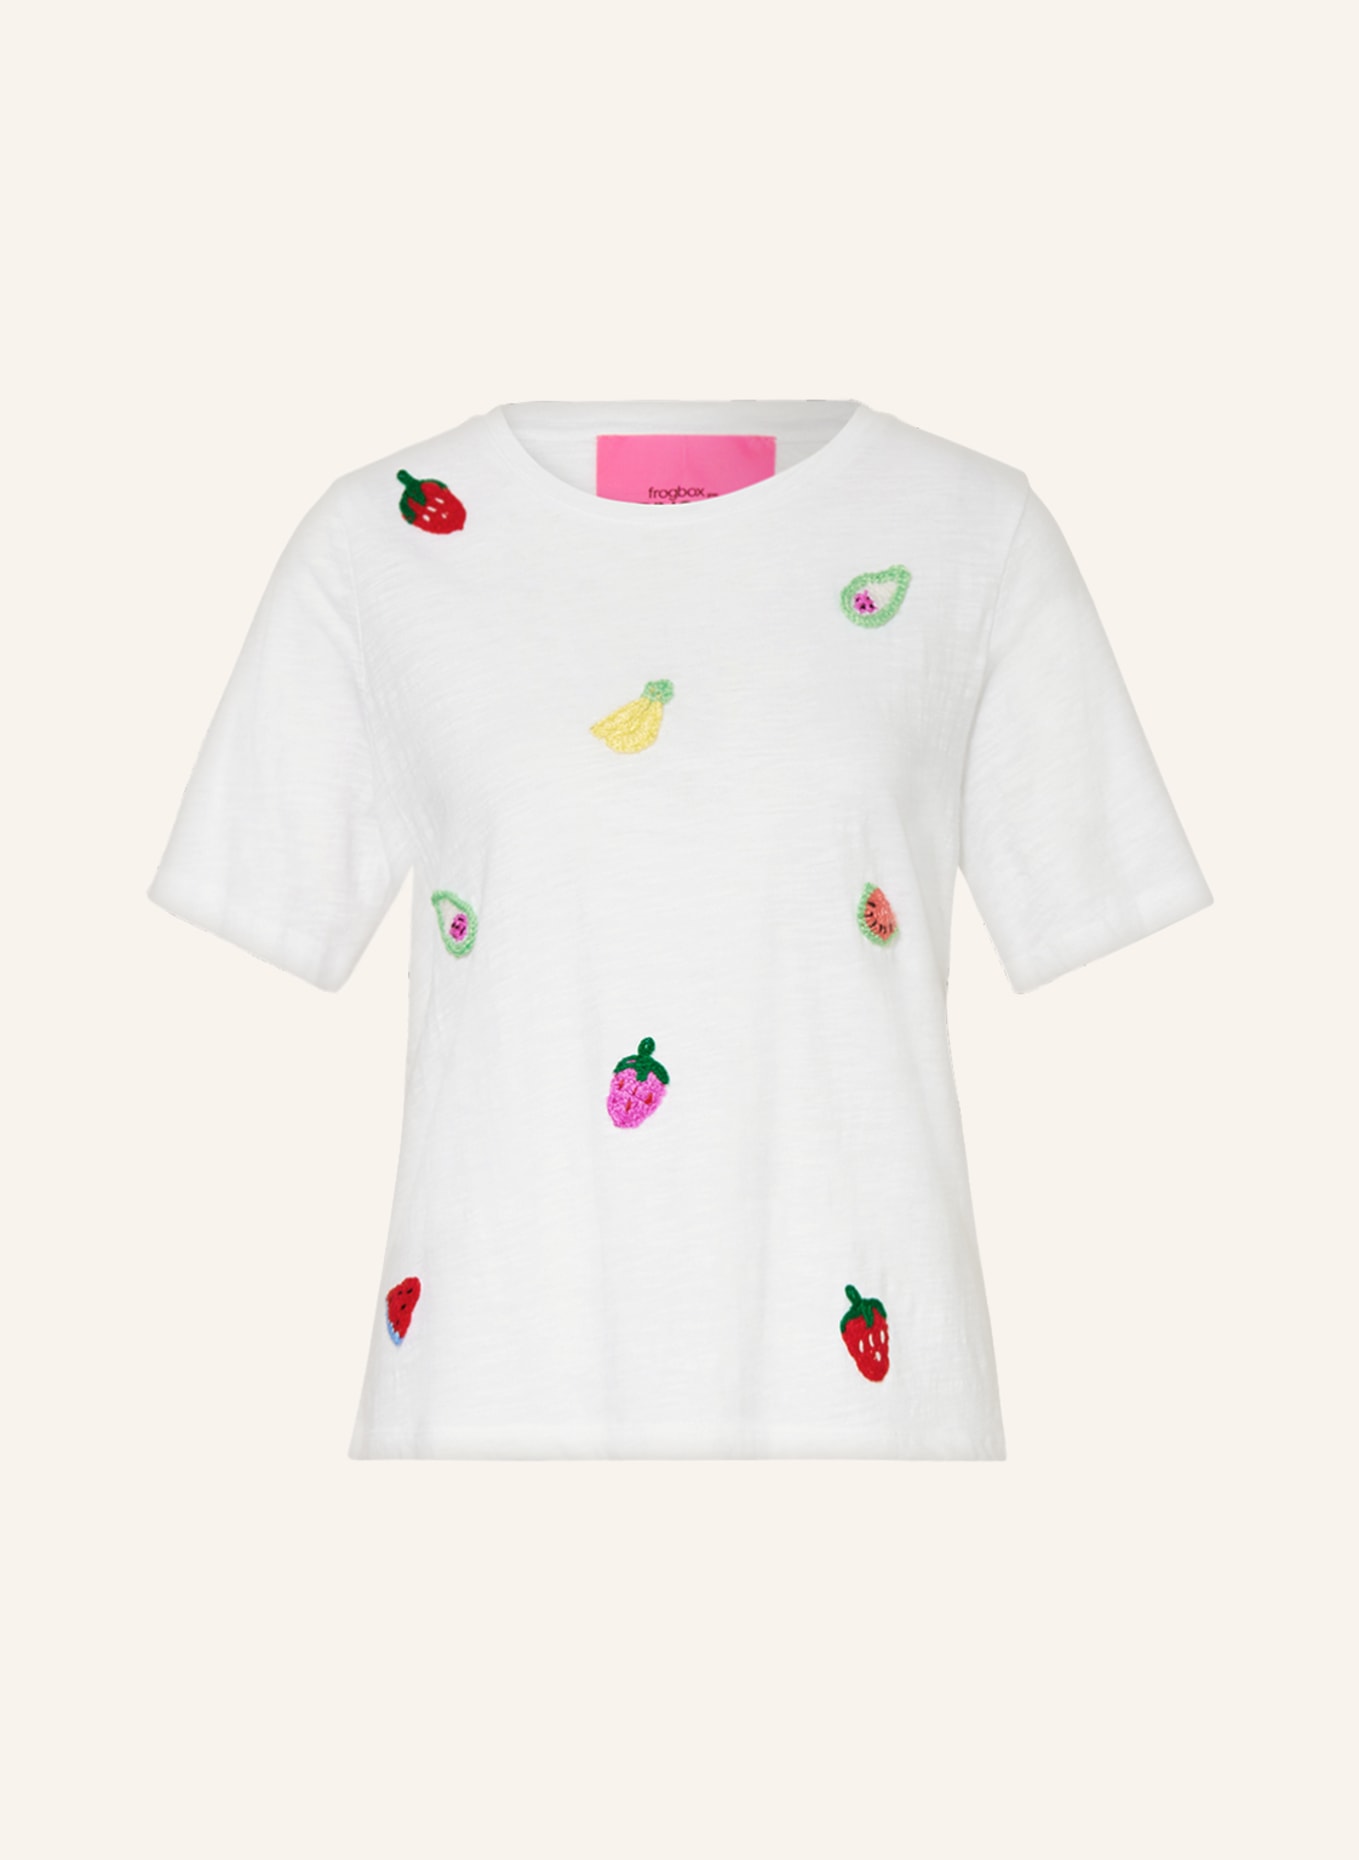 FrogBox T-Shirt mit Stickereien, Farbe: 1100 clear white weiss (Bild 1)